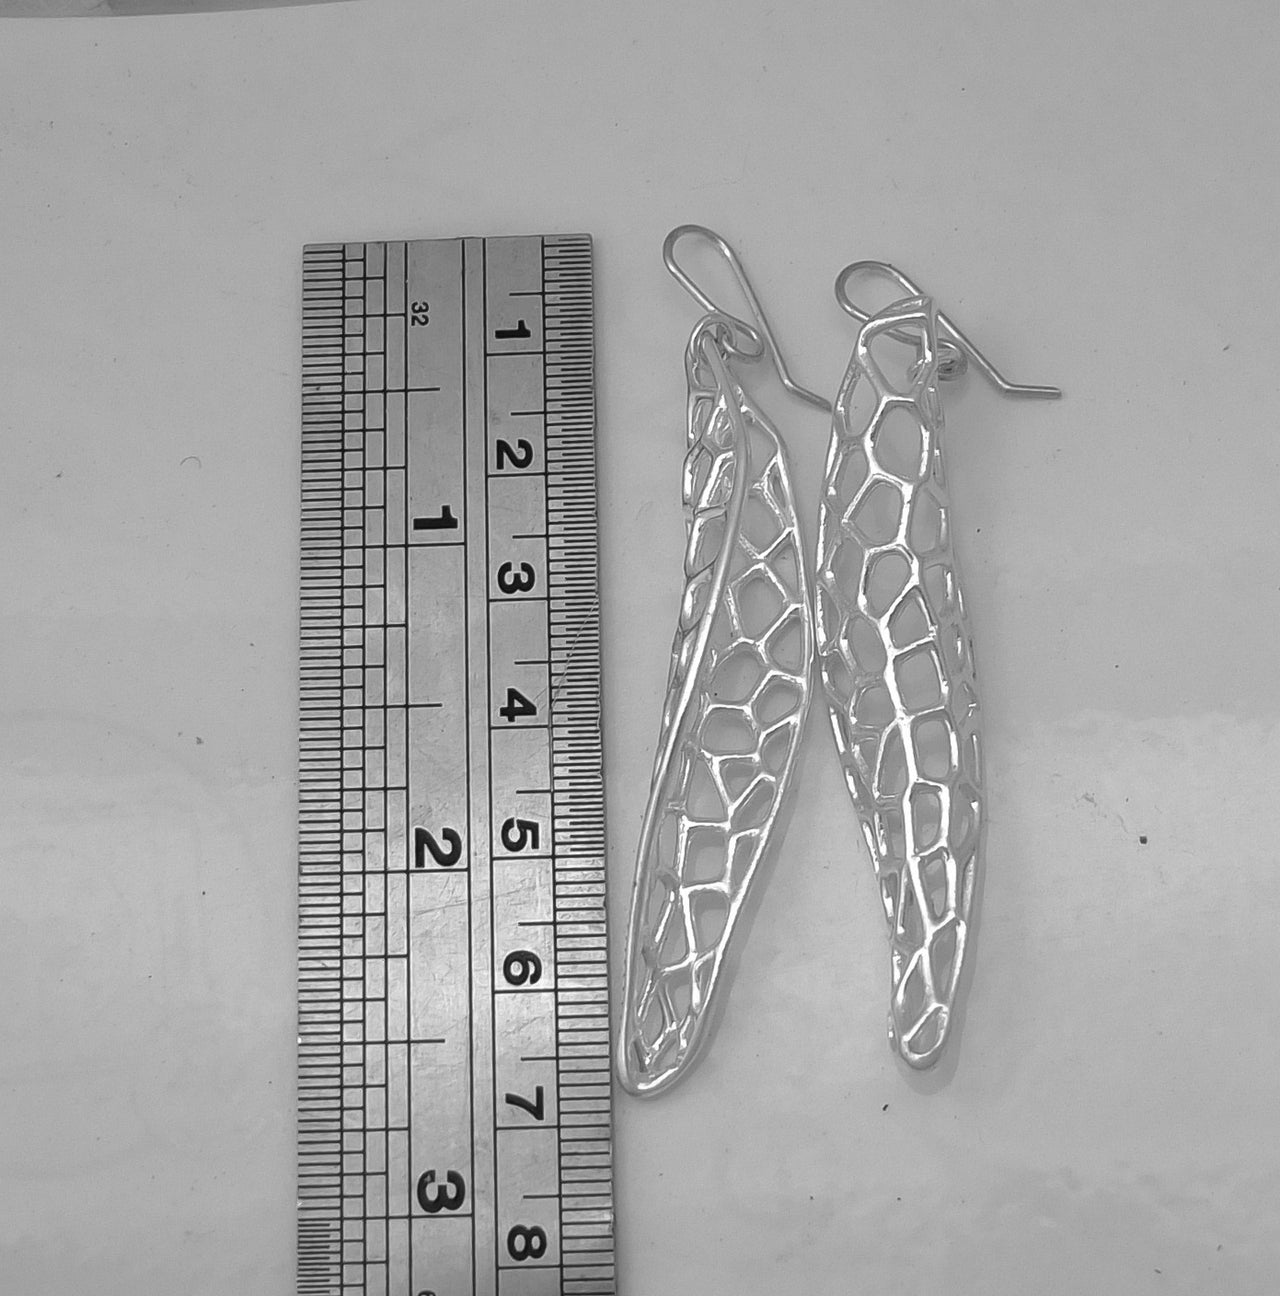 Archaea Silver  Earrings | nz jewellery | redmānuka